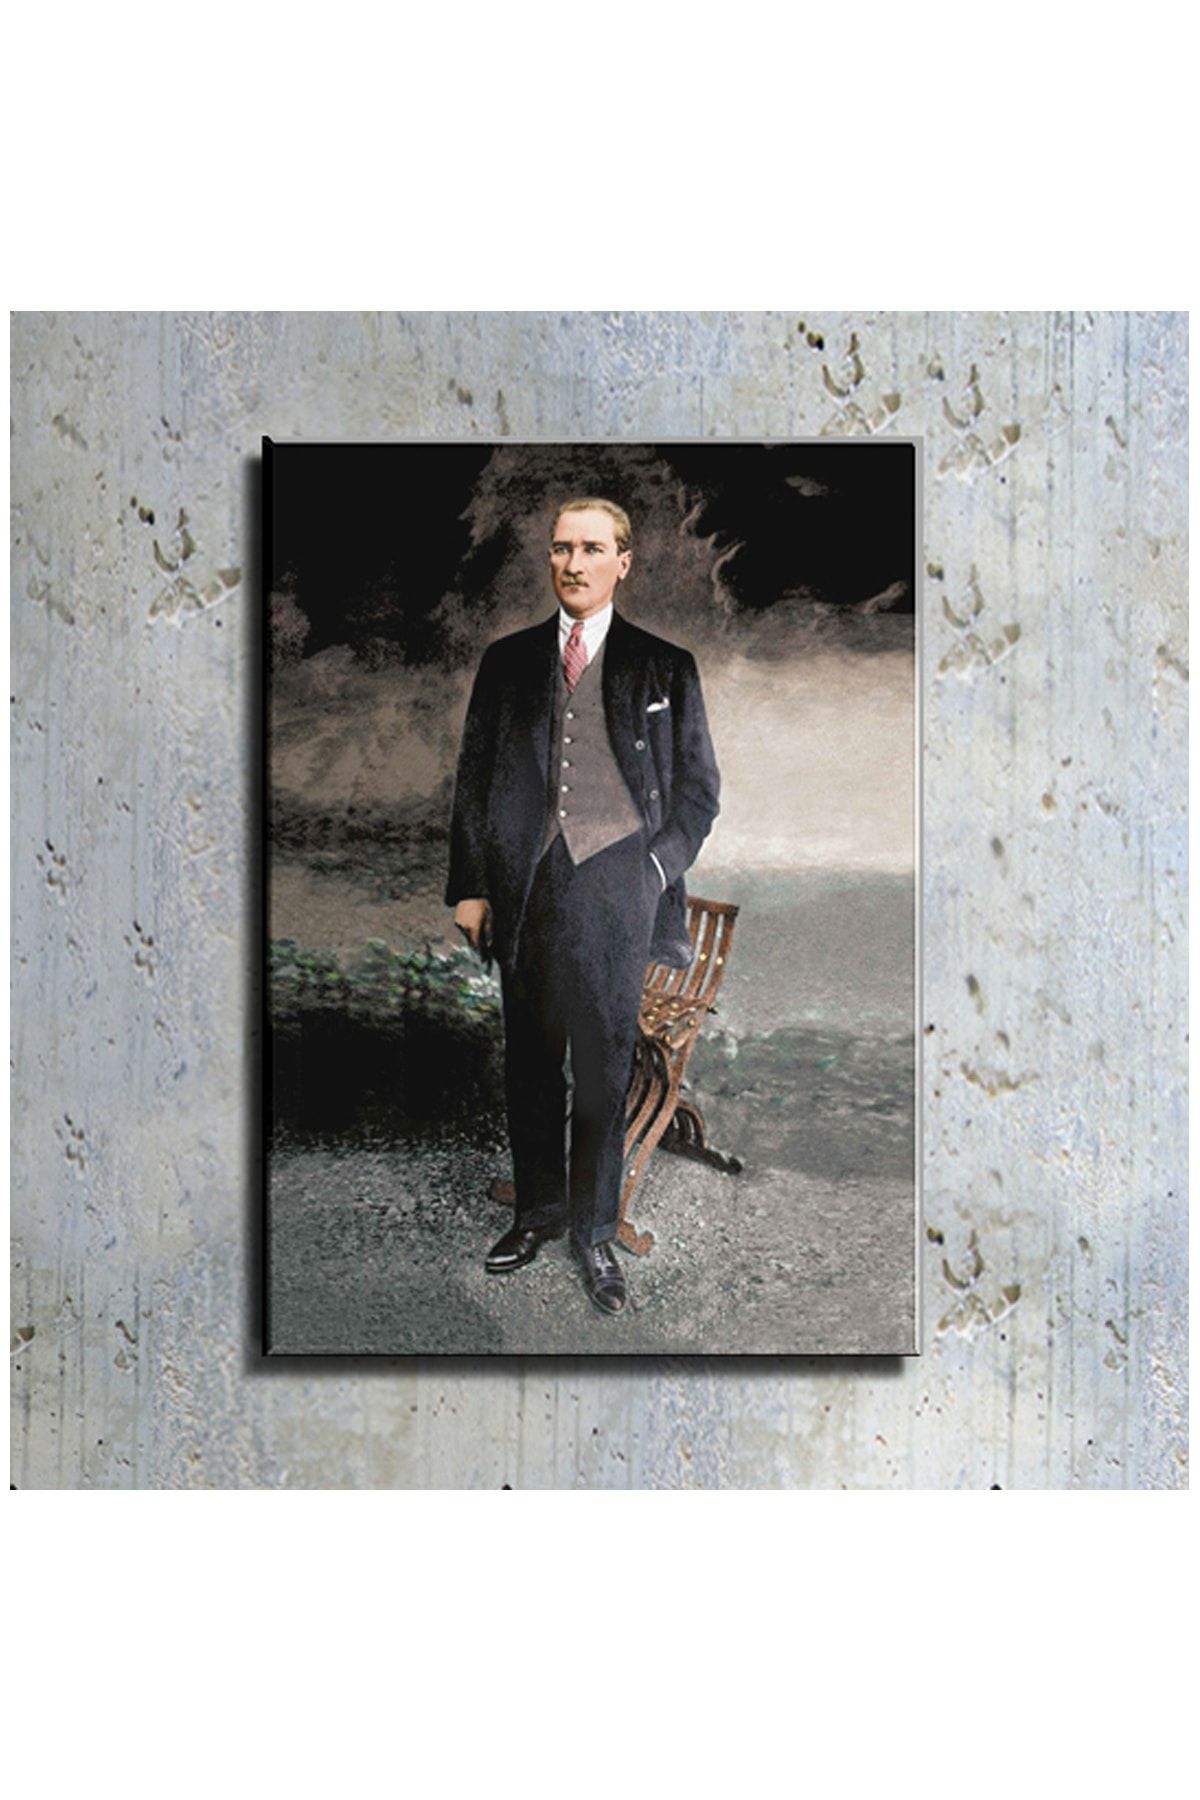 mağazacım Atatürk Takım Elbiseli Boy Resmi (80x110 Cm) Kanvas Tablo Tbl1215